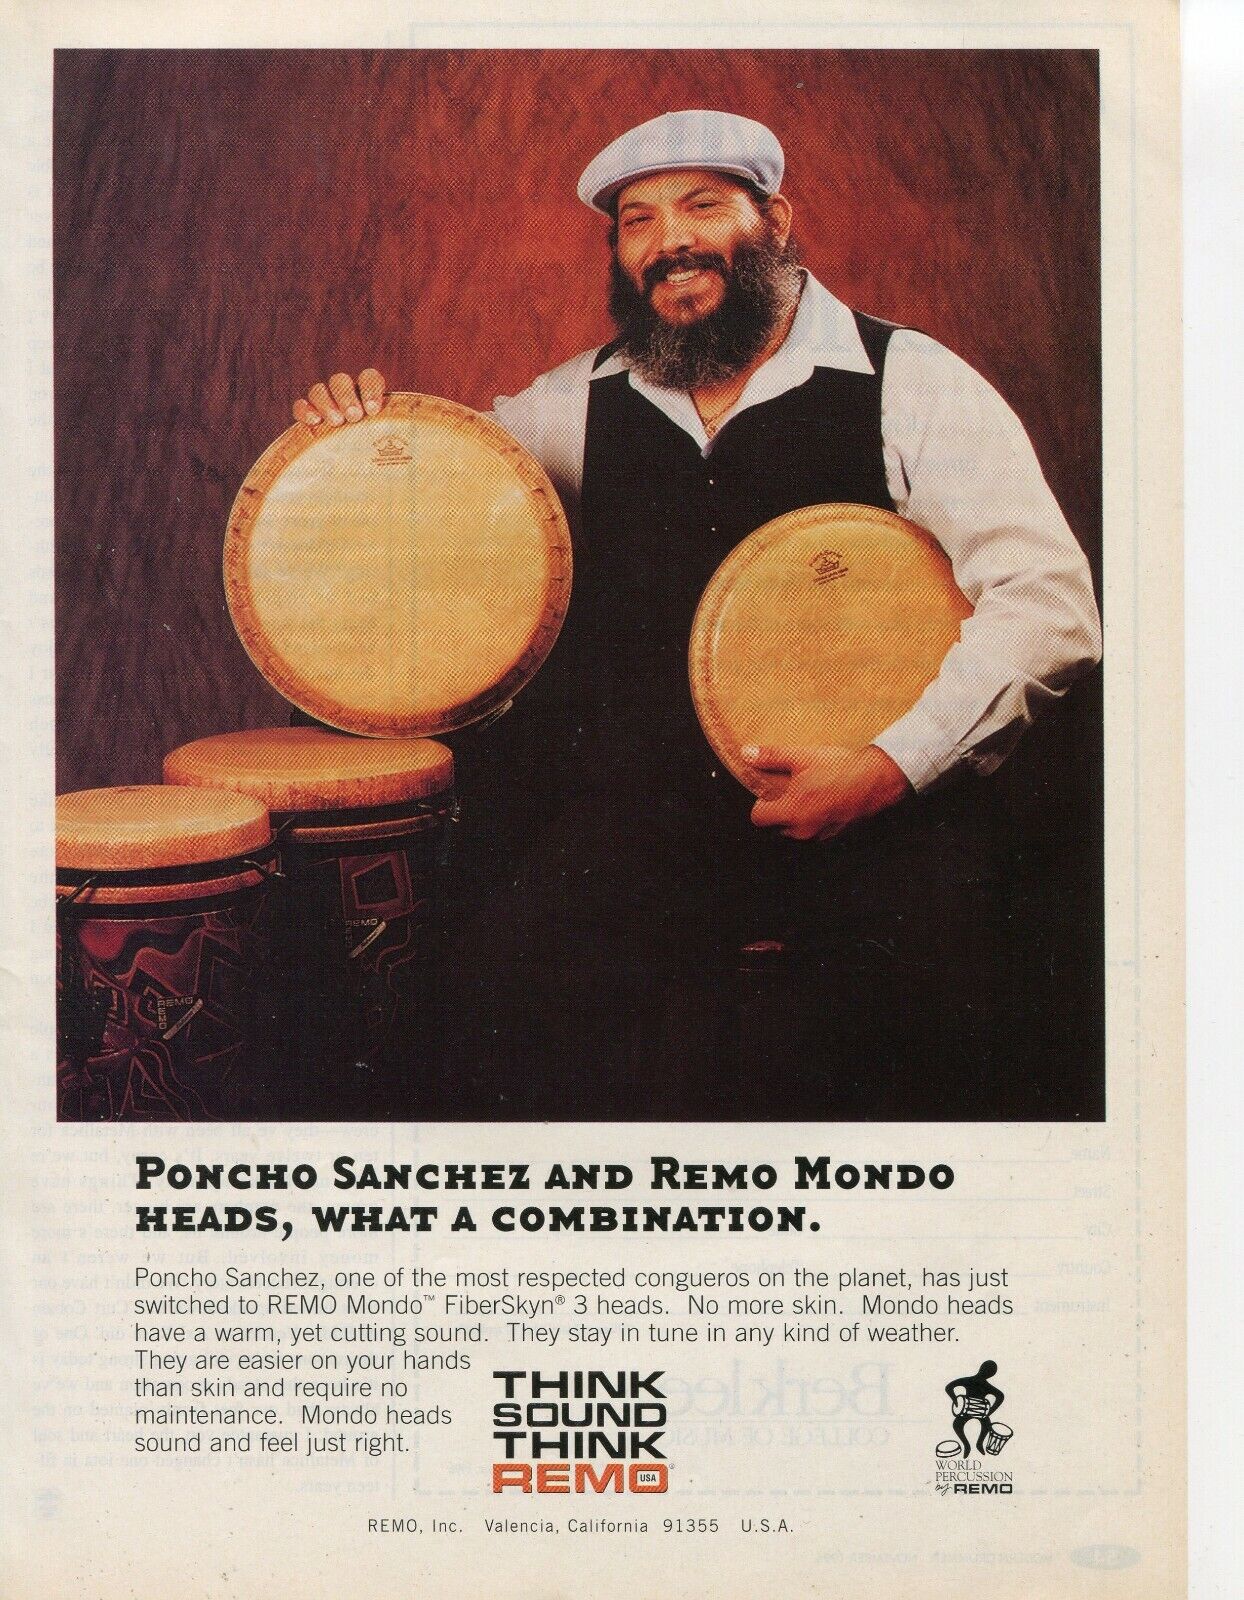 1996 Print Ad of Remo Mondo Drum Heads w Poncho Sanchez